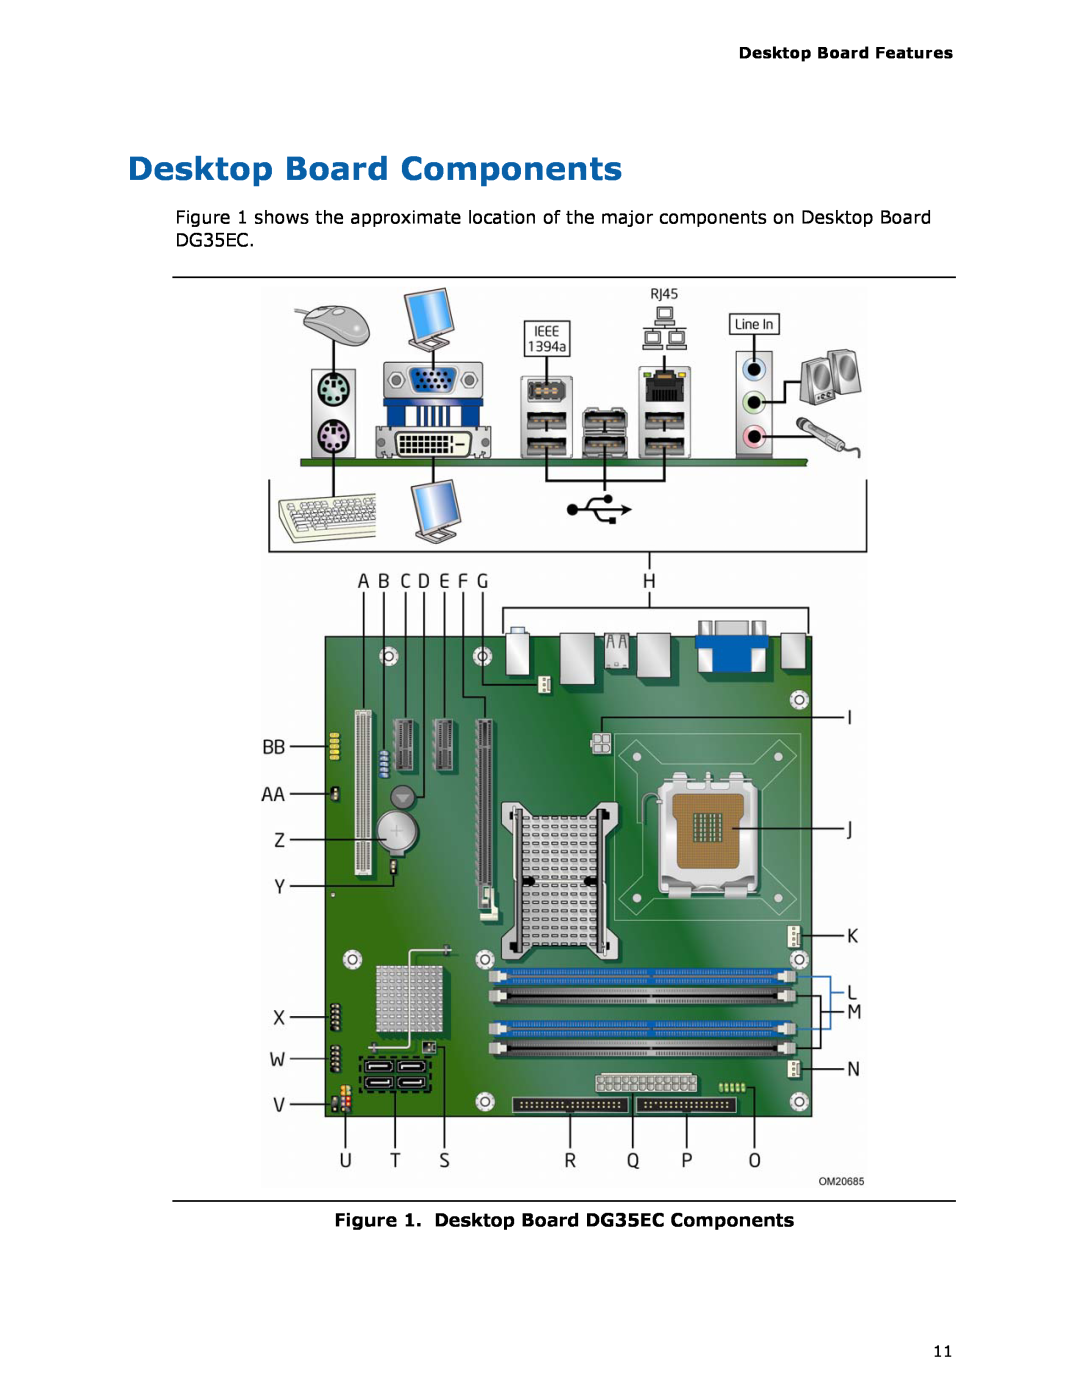 Intel Intel Desktop Board manual Desktop Board Components, Desktop Board DG35EC Components 